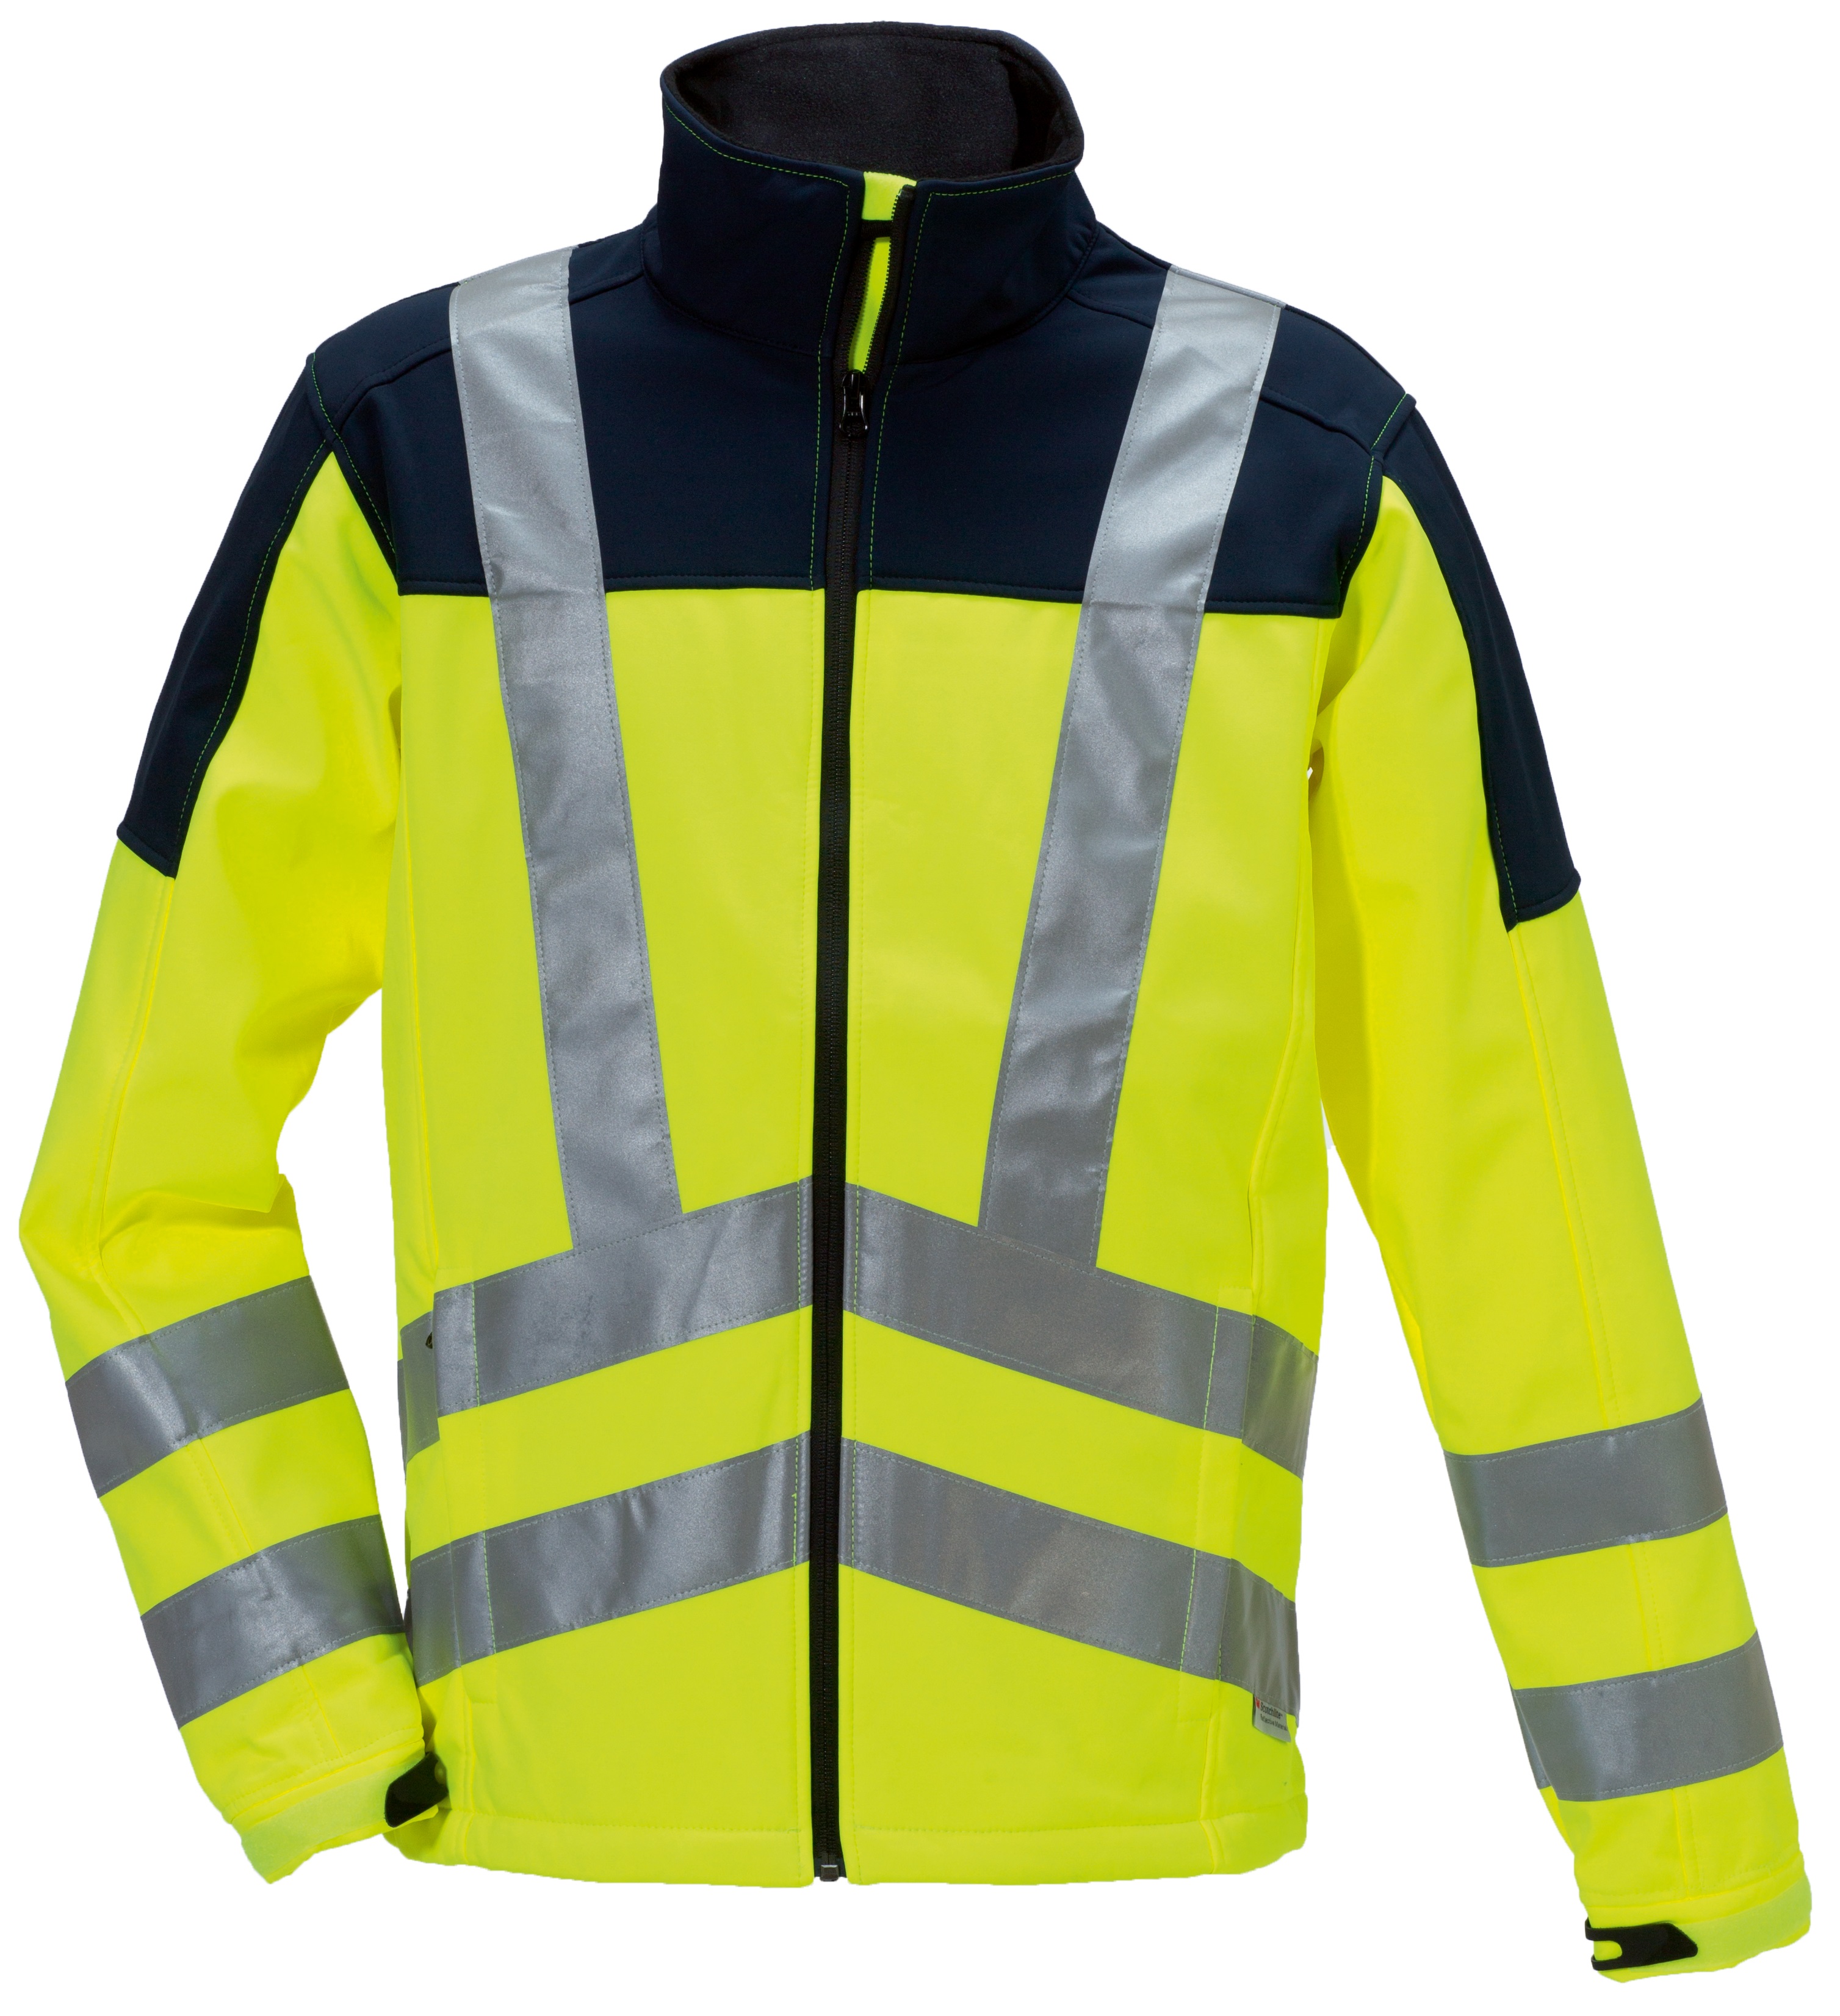 ROFA SJ Softshelljacke Arbeitsjacke Warnkleidung Warnschutz leuchtgelb marine ca 310 g